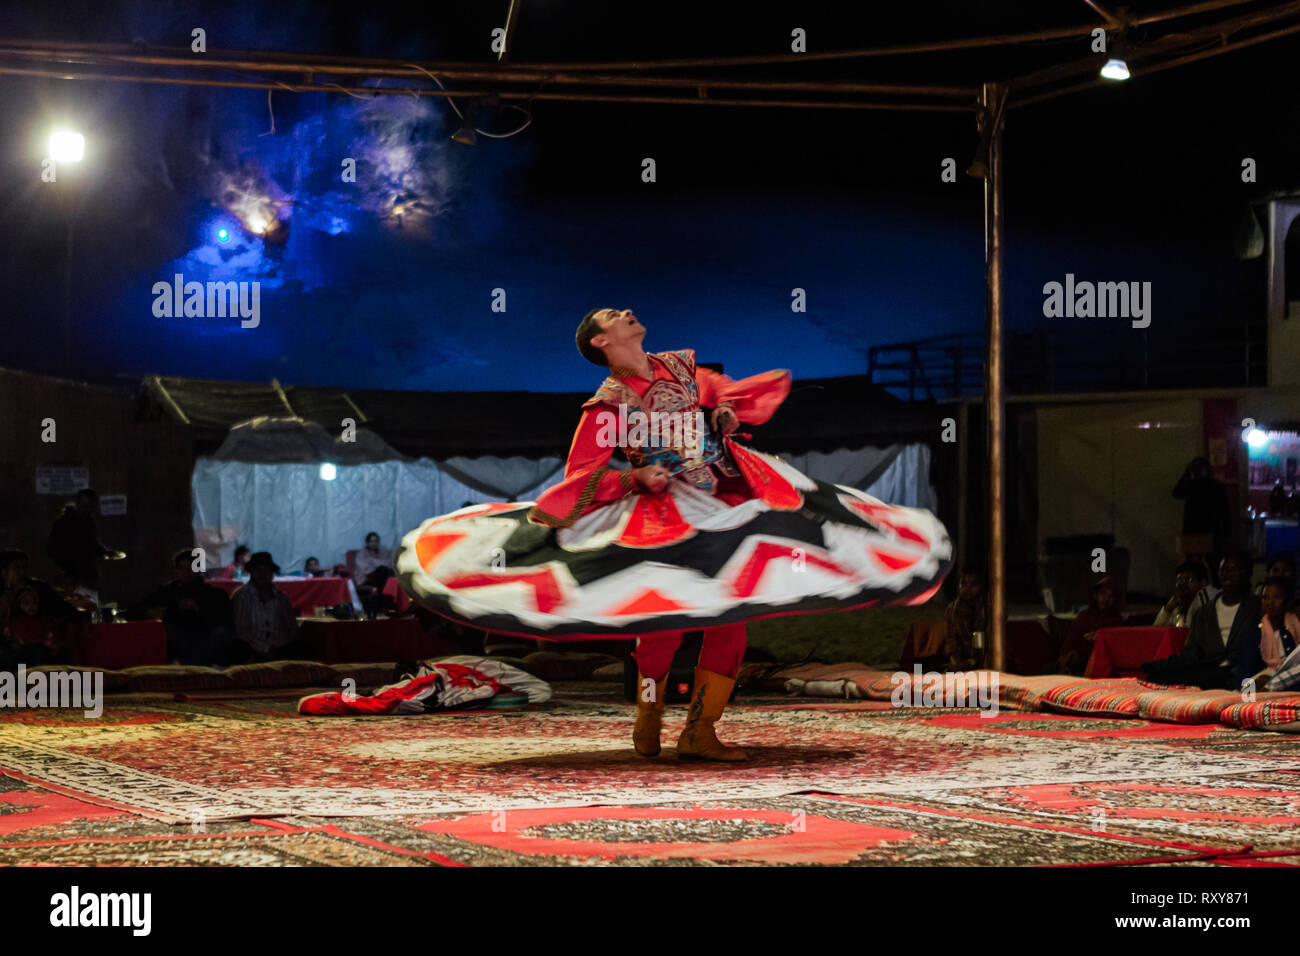 Dec 24, 2013 - die tanzenden Derwische von Al Tanoura Folklore Truppe in Dubai, Vereinigte Arabische Emirate. Stockfoto